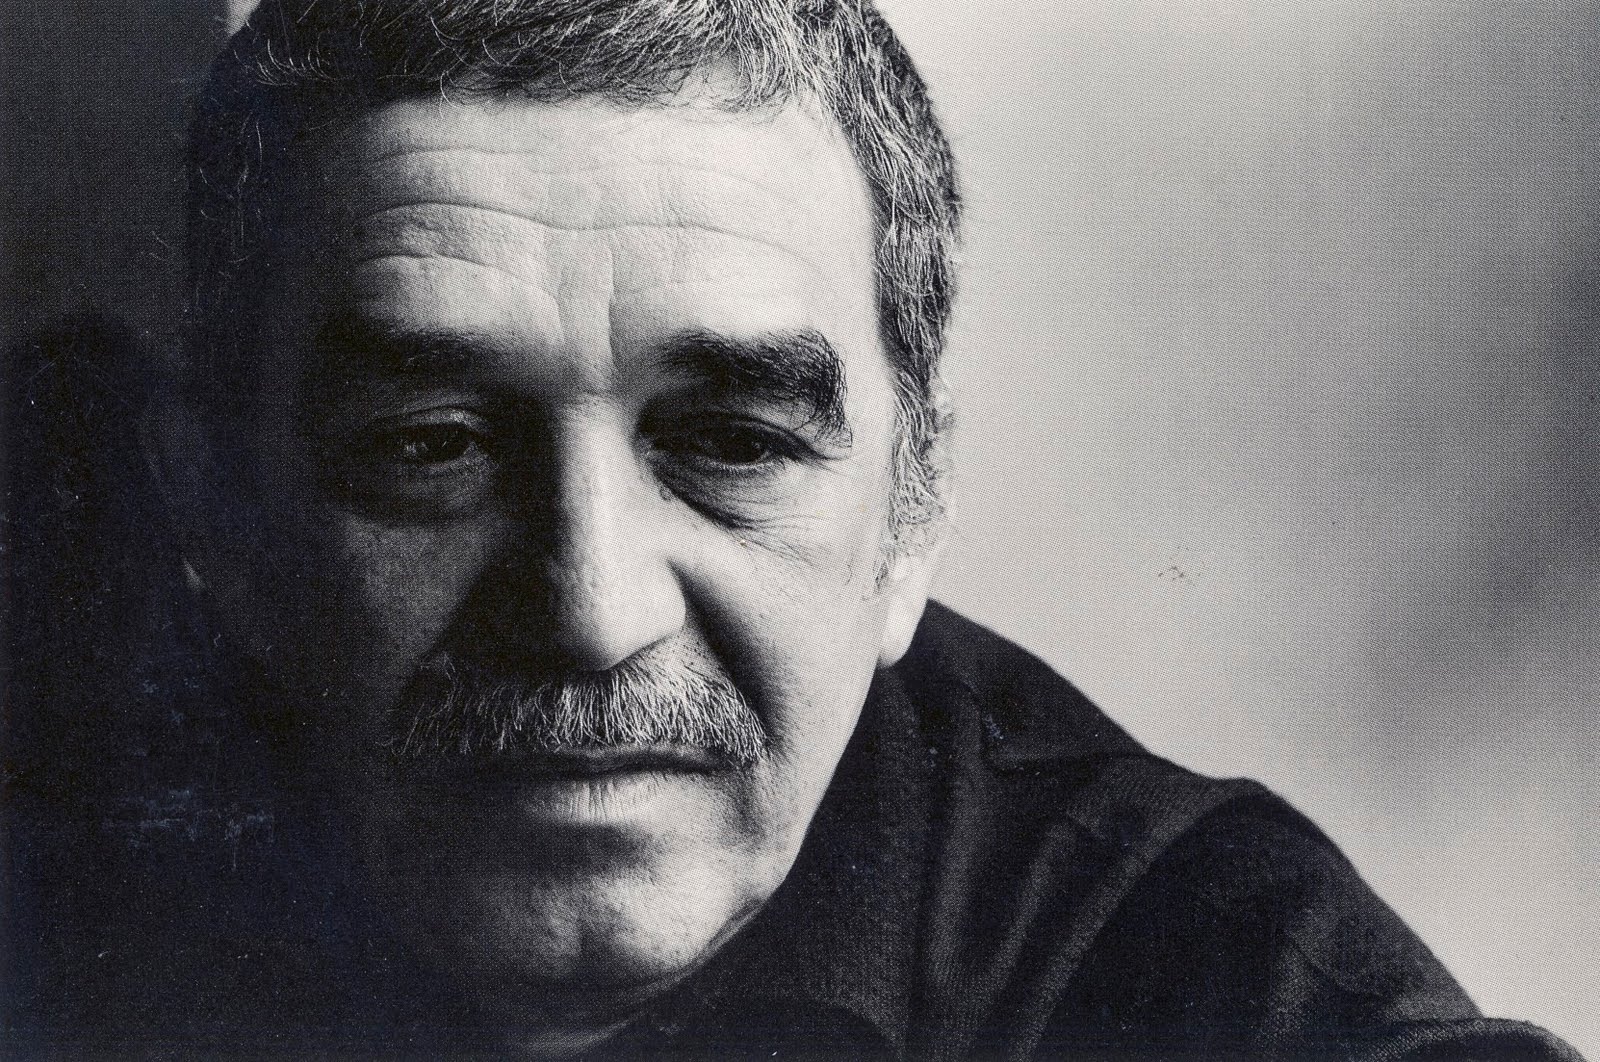 La soledad de un recuerdo. Hasta siempre, García Márquez